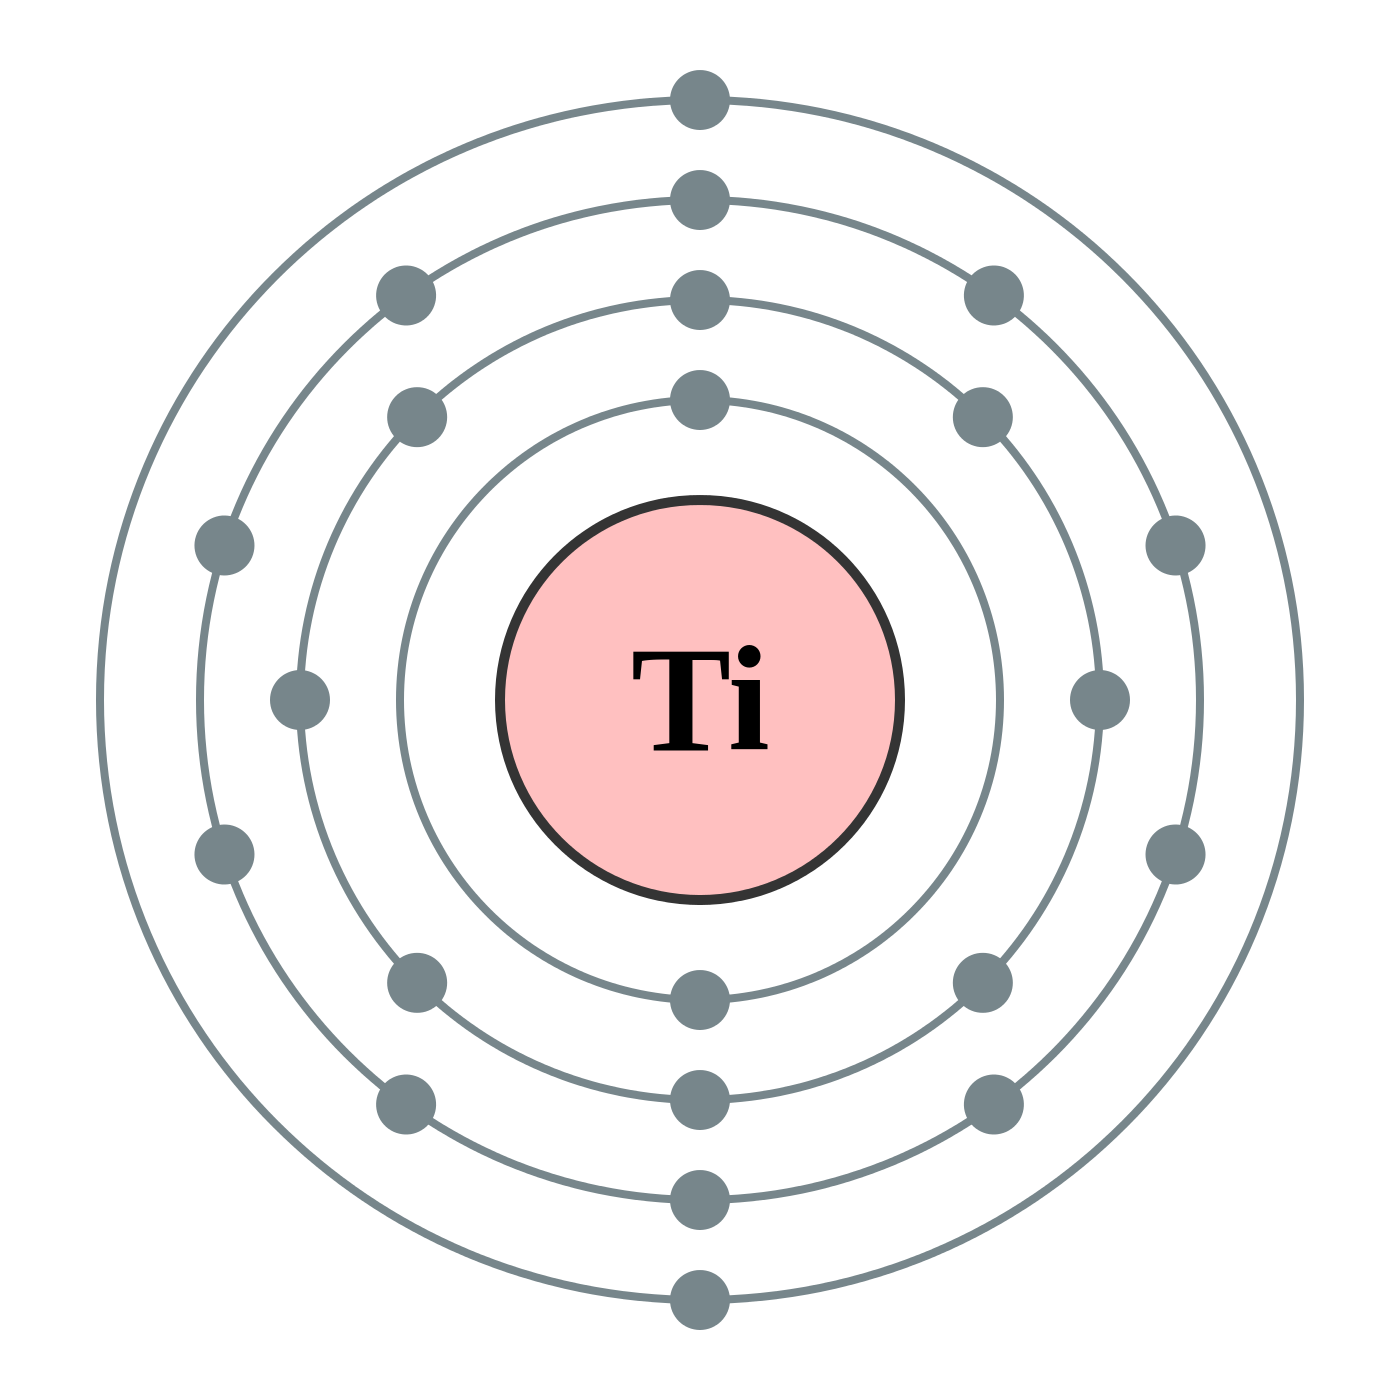 titanium bohr diagram